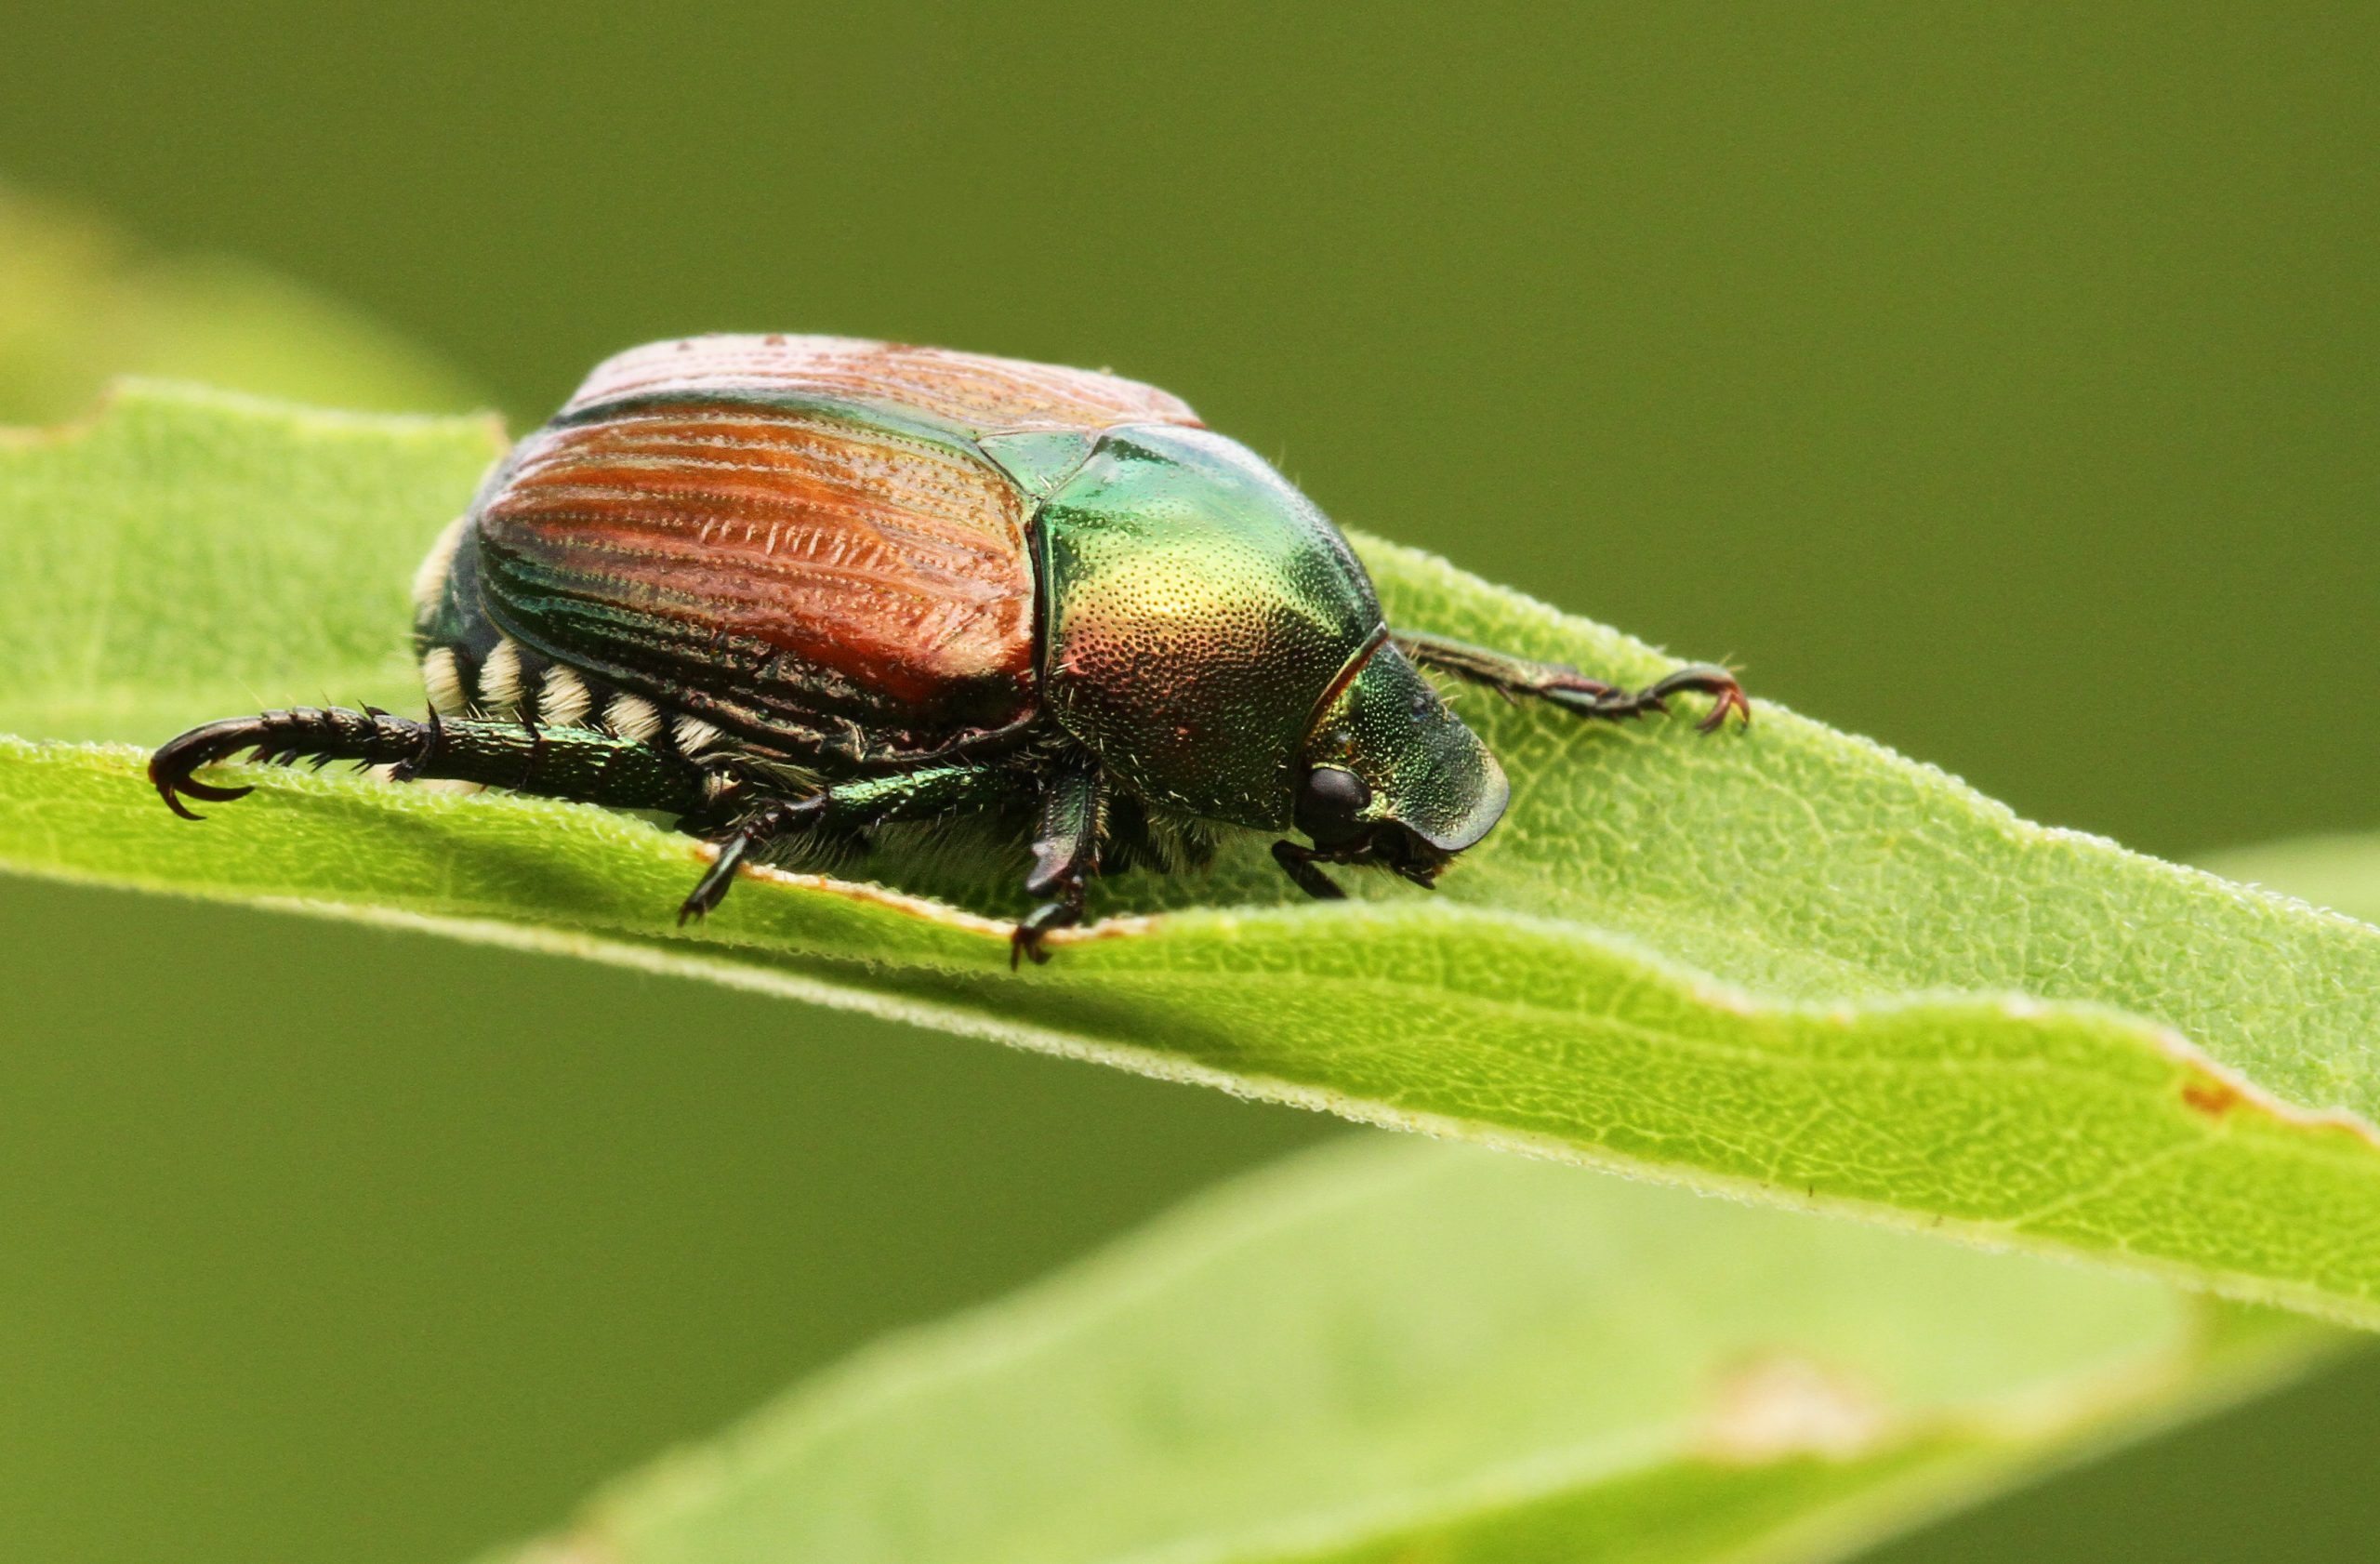 Japanese beetle -Popillia japonica (Photo: iStock - mirceax)